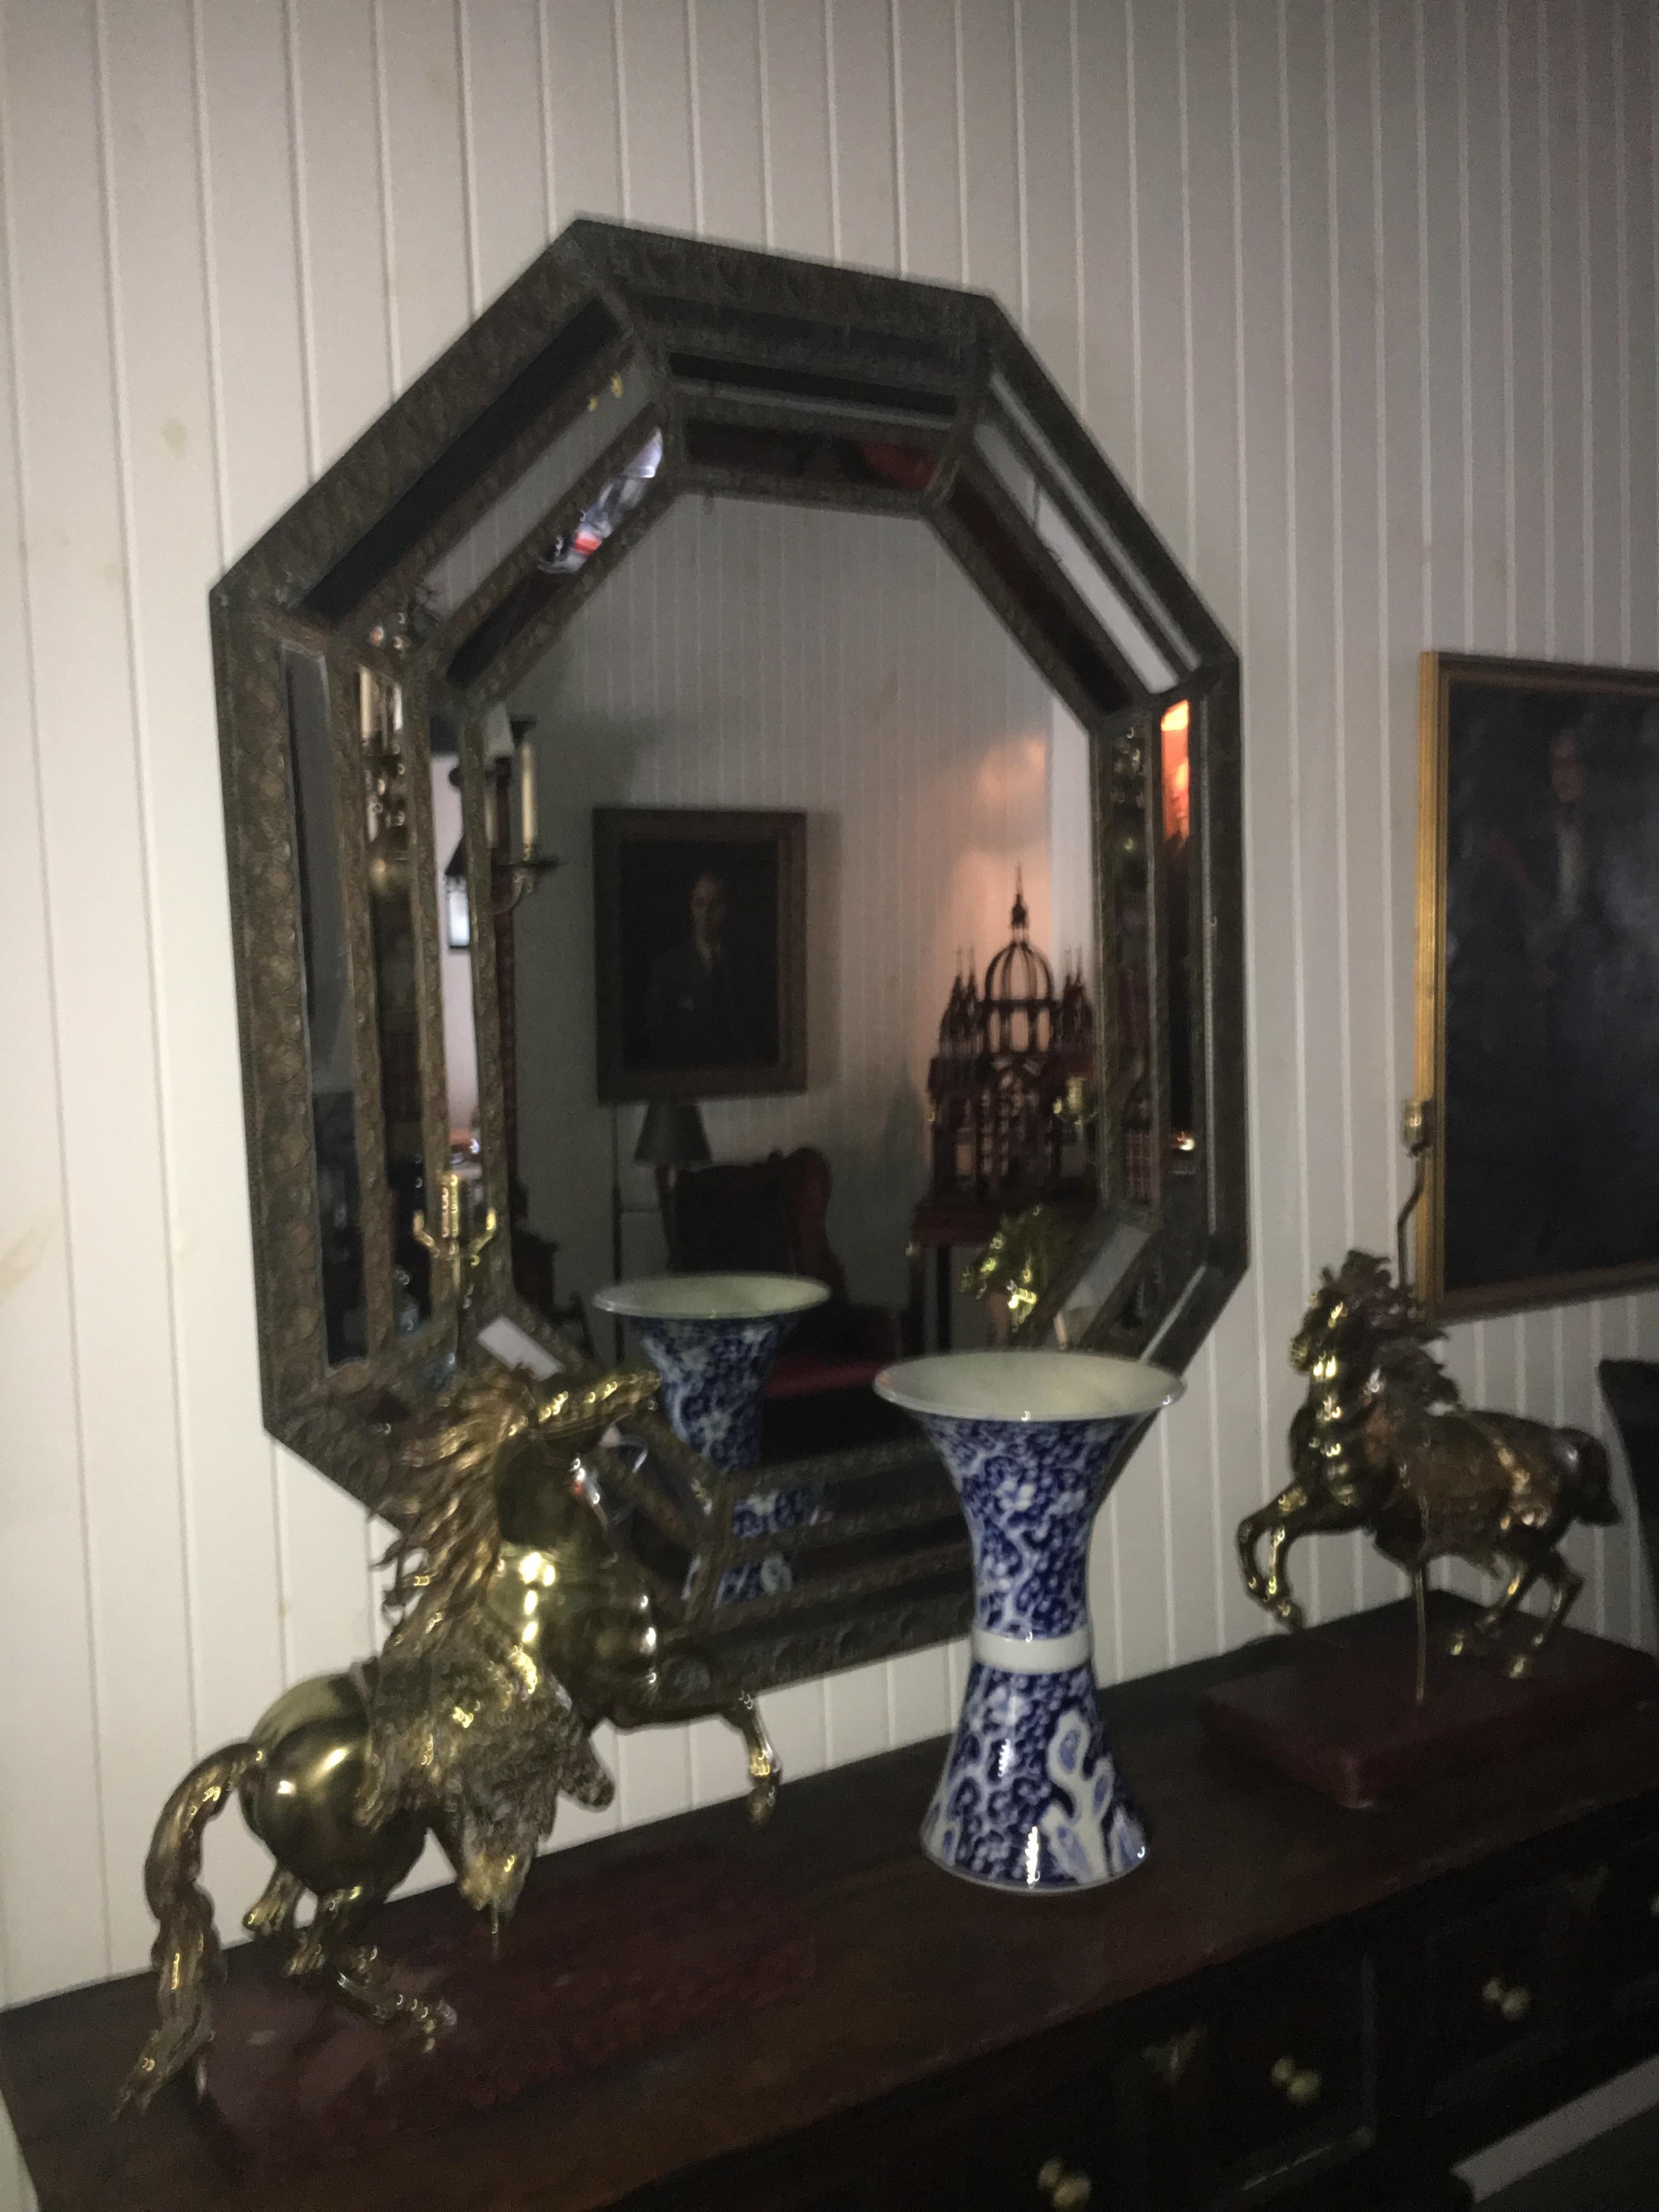 Miroir octogonal du 19ème siècle avec cadre en métal repoussé, plaque de miroir originale
60.5